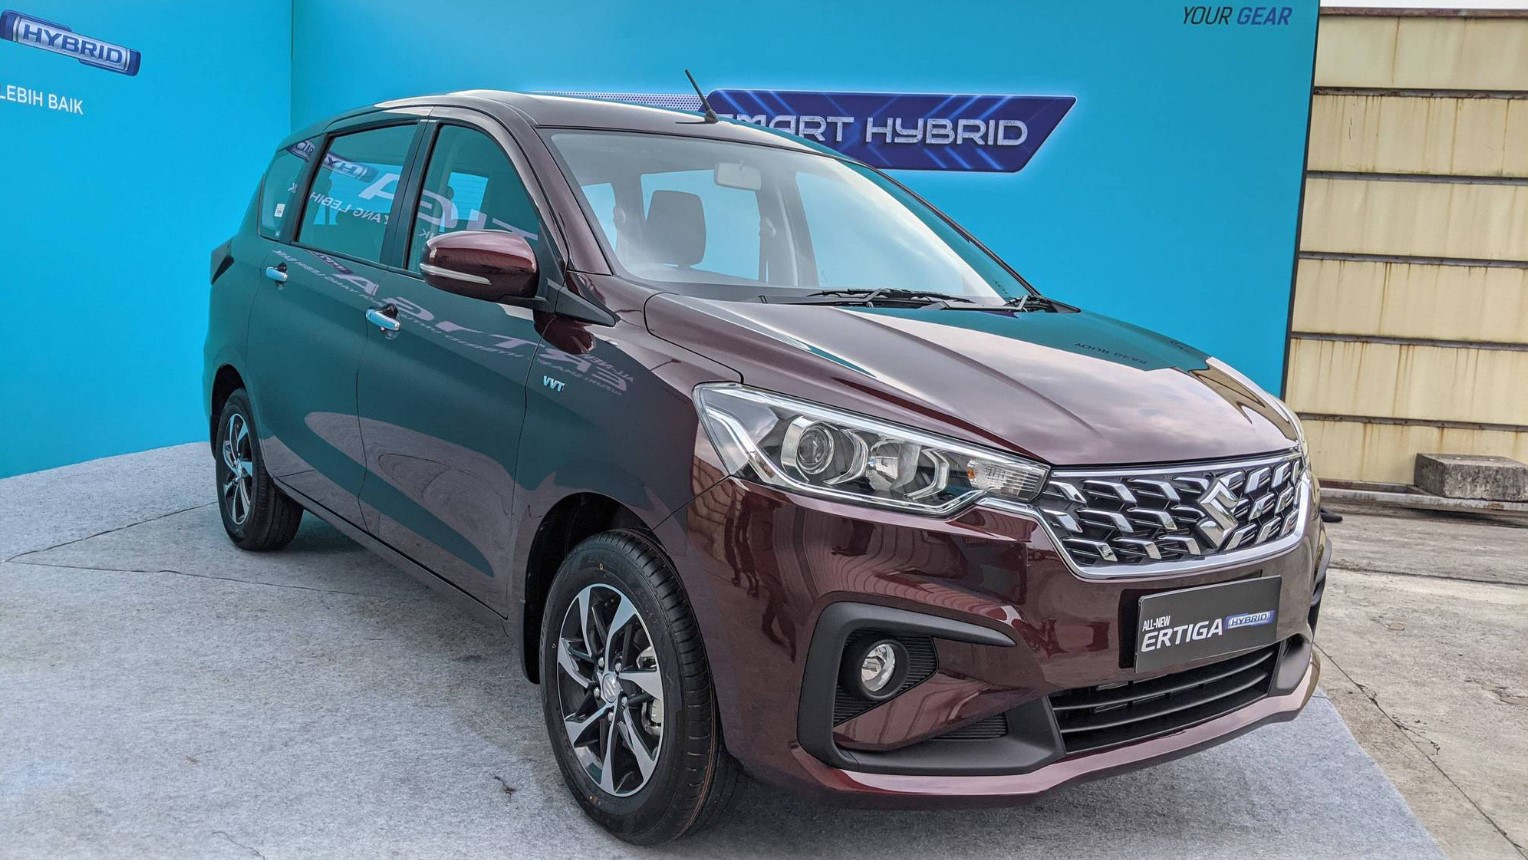 Suzuki Ertiga mới ra mắt khách Việt vào tháng 9, giá dự kiến cực rẻ làm Mitsubishi Xpander chạy dài ảnh 2